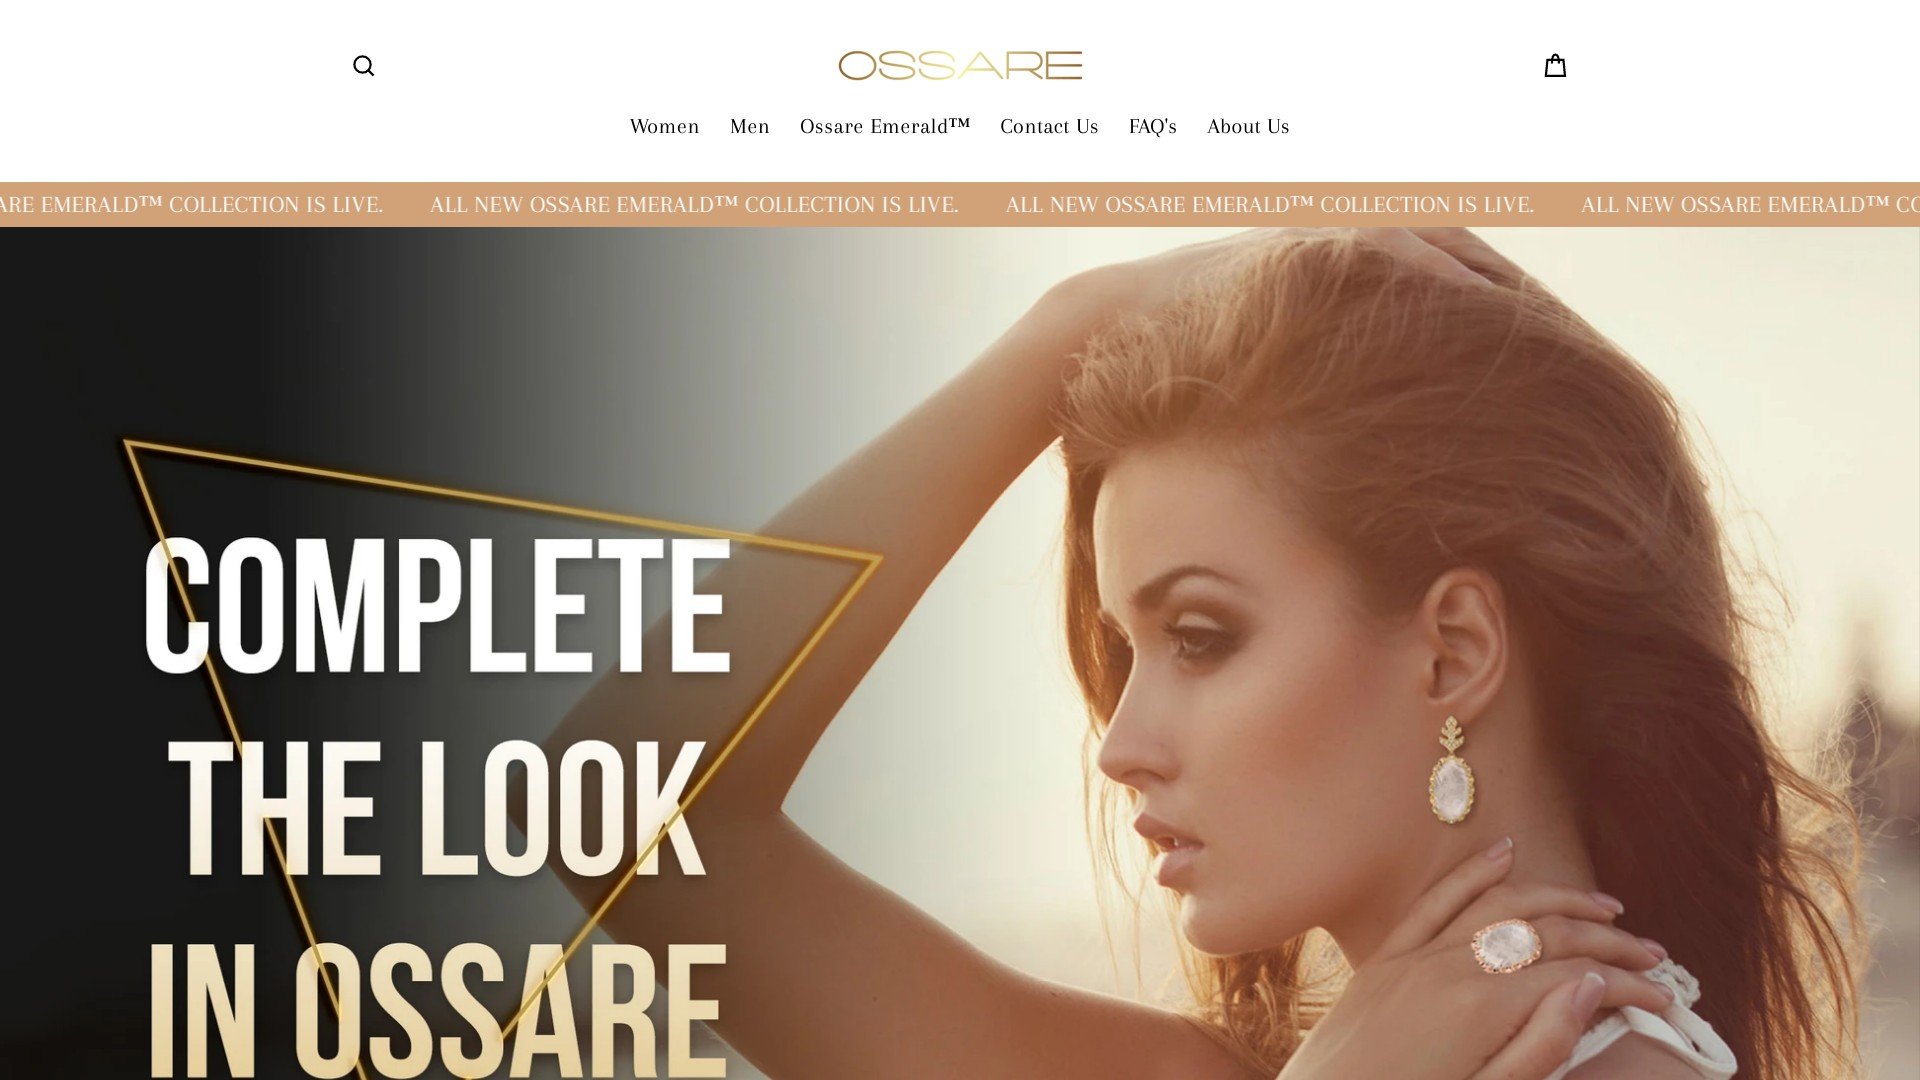 Ossare located at ossare.com